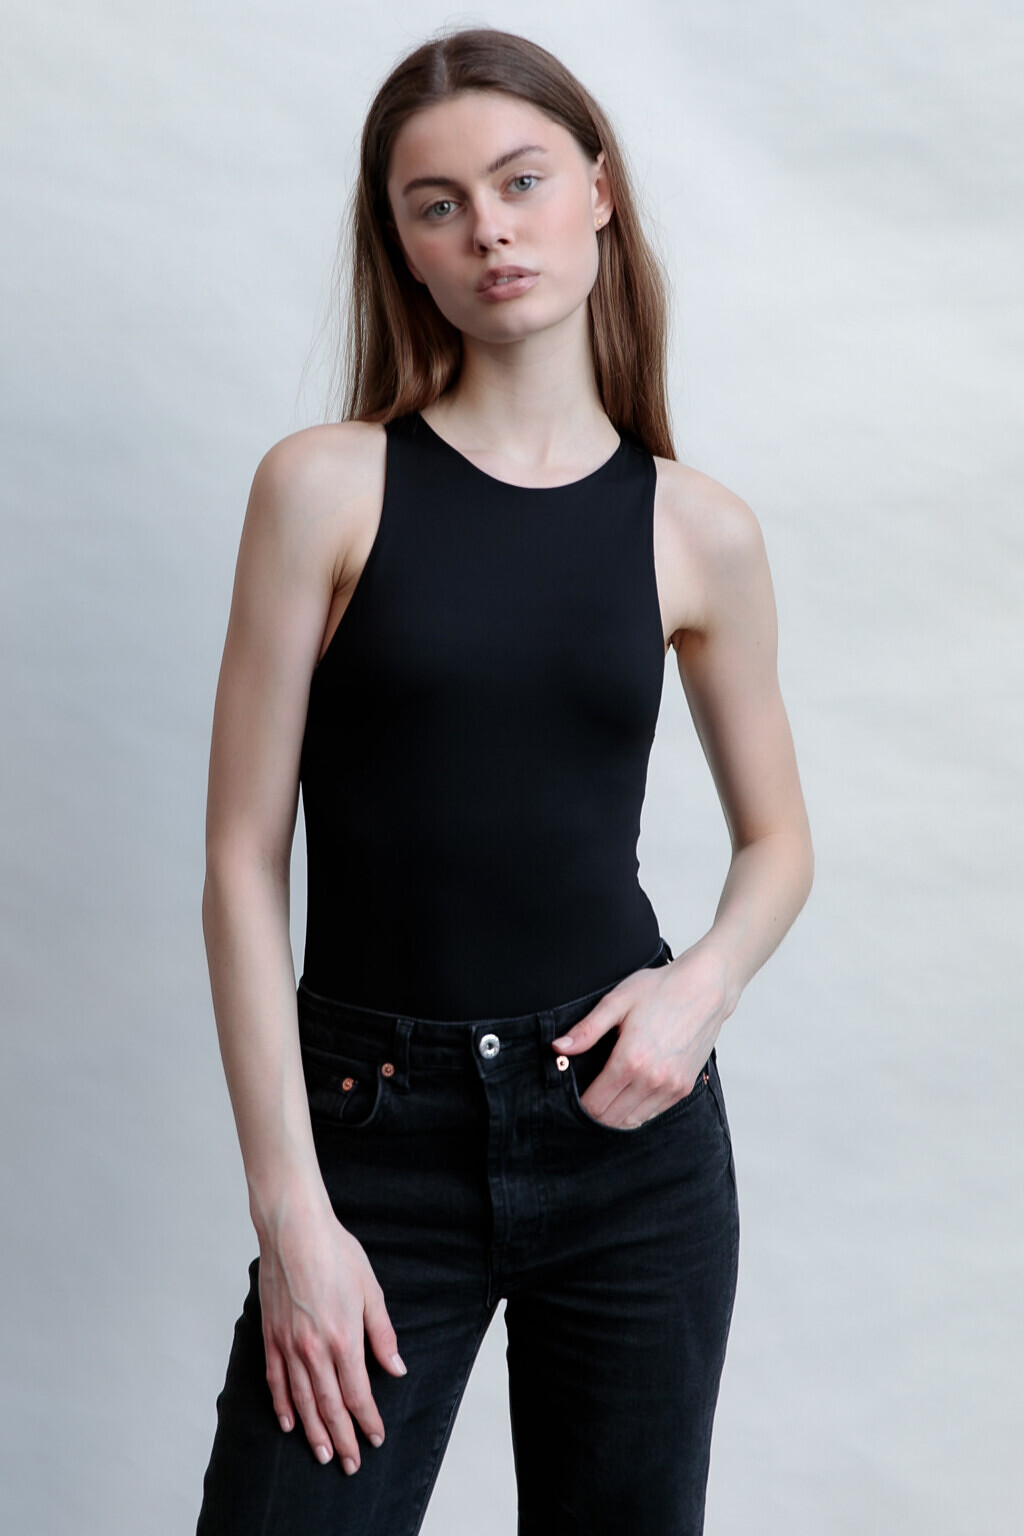 Laura Kroer - Unique Models